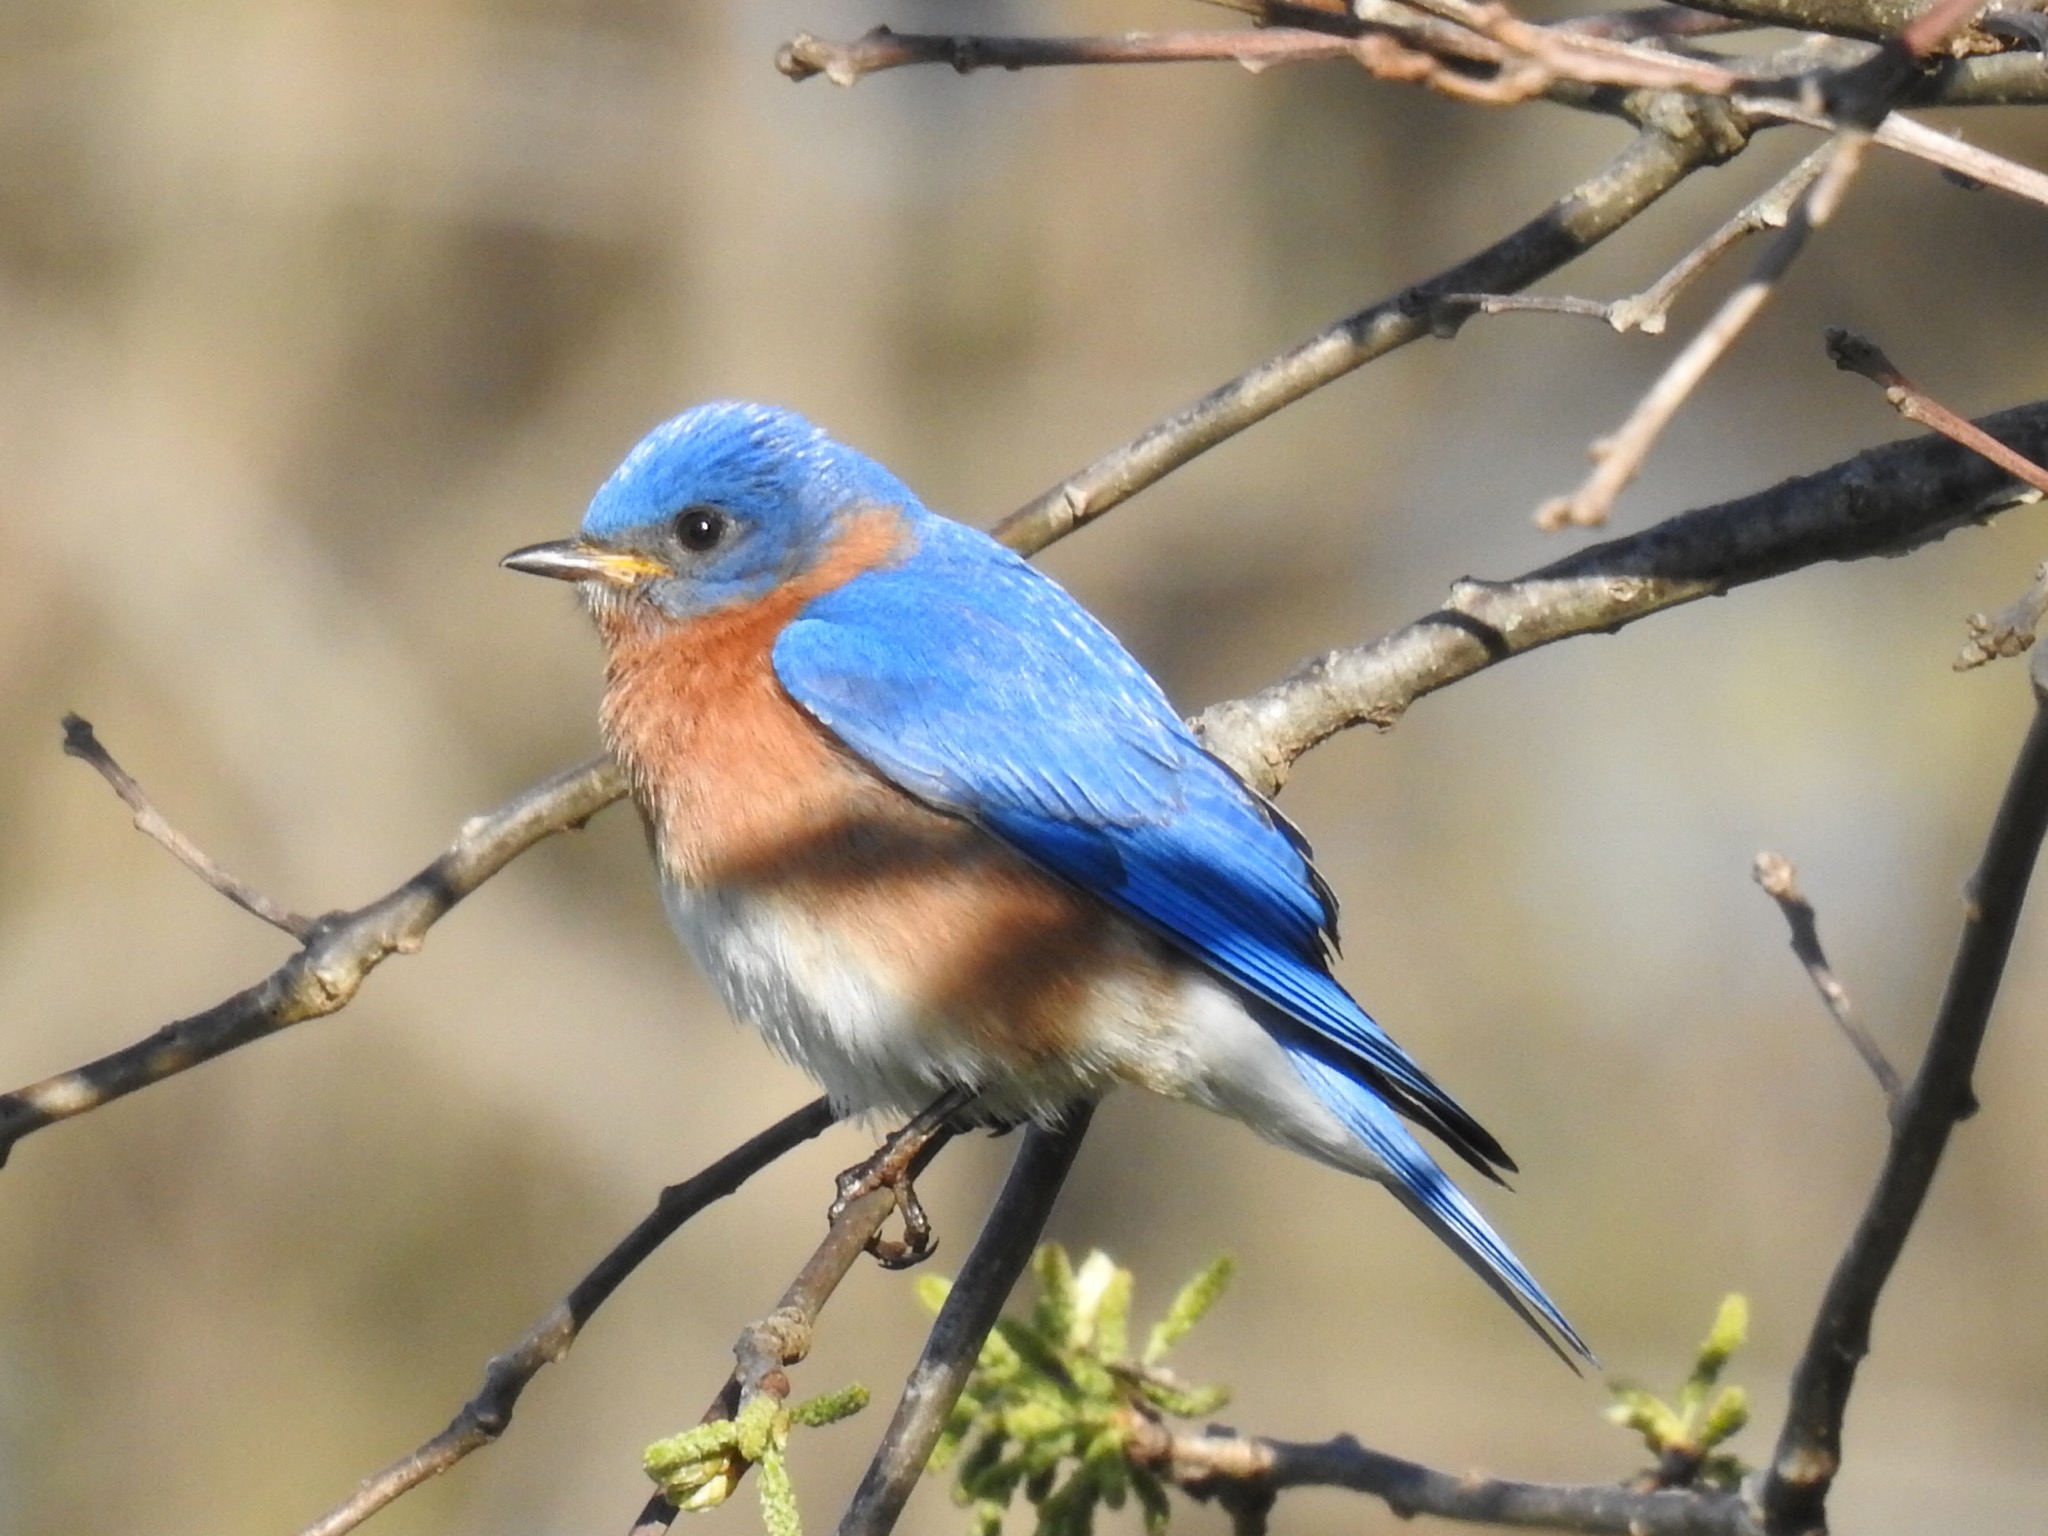 An eastern bluebird on a branch